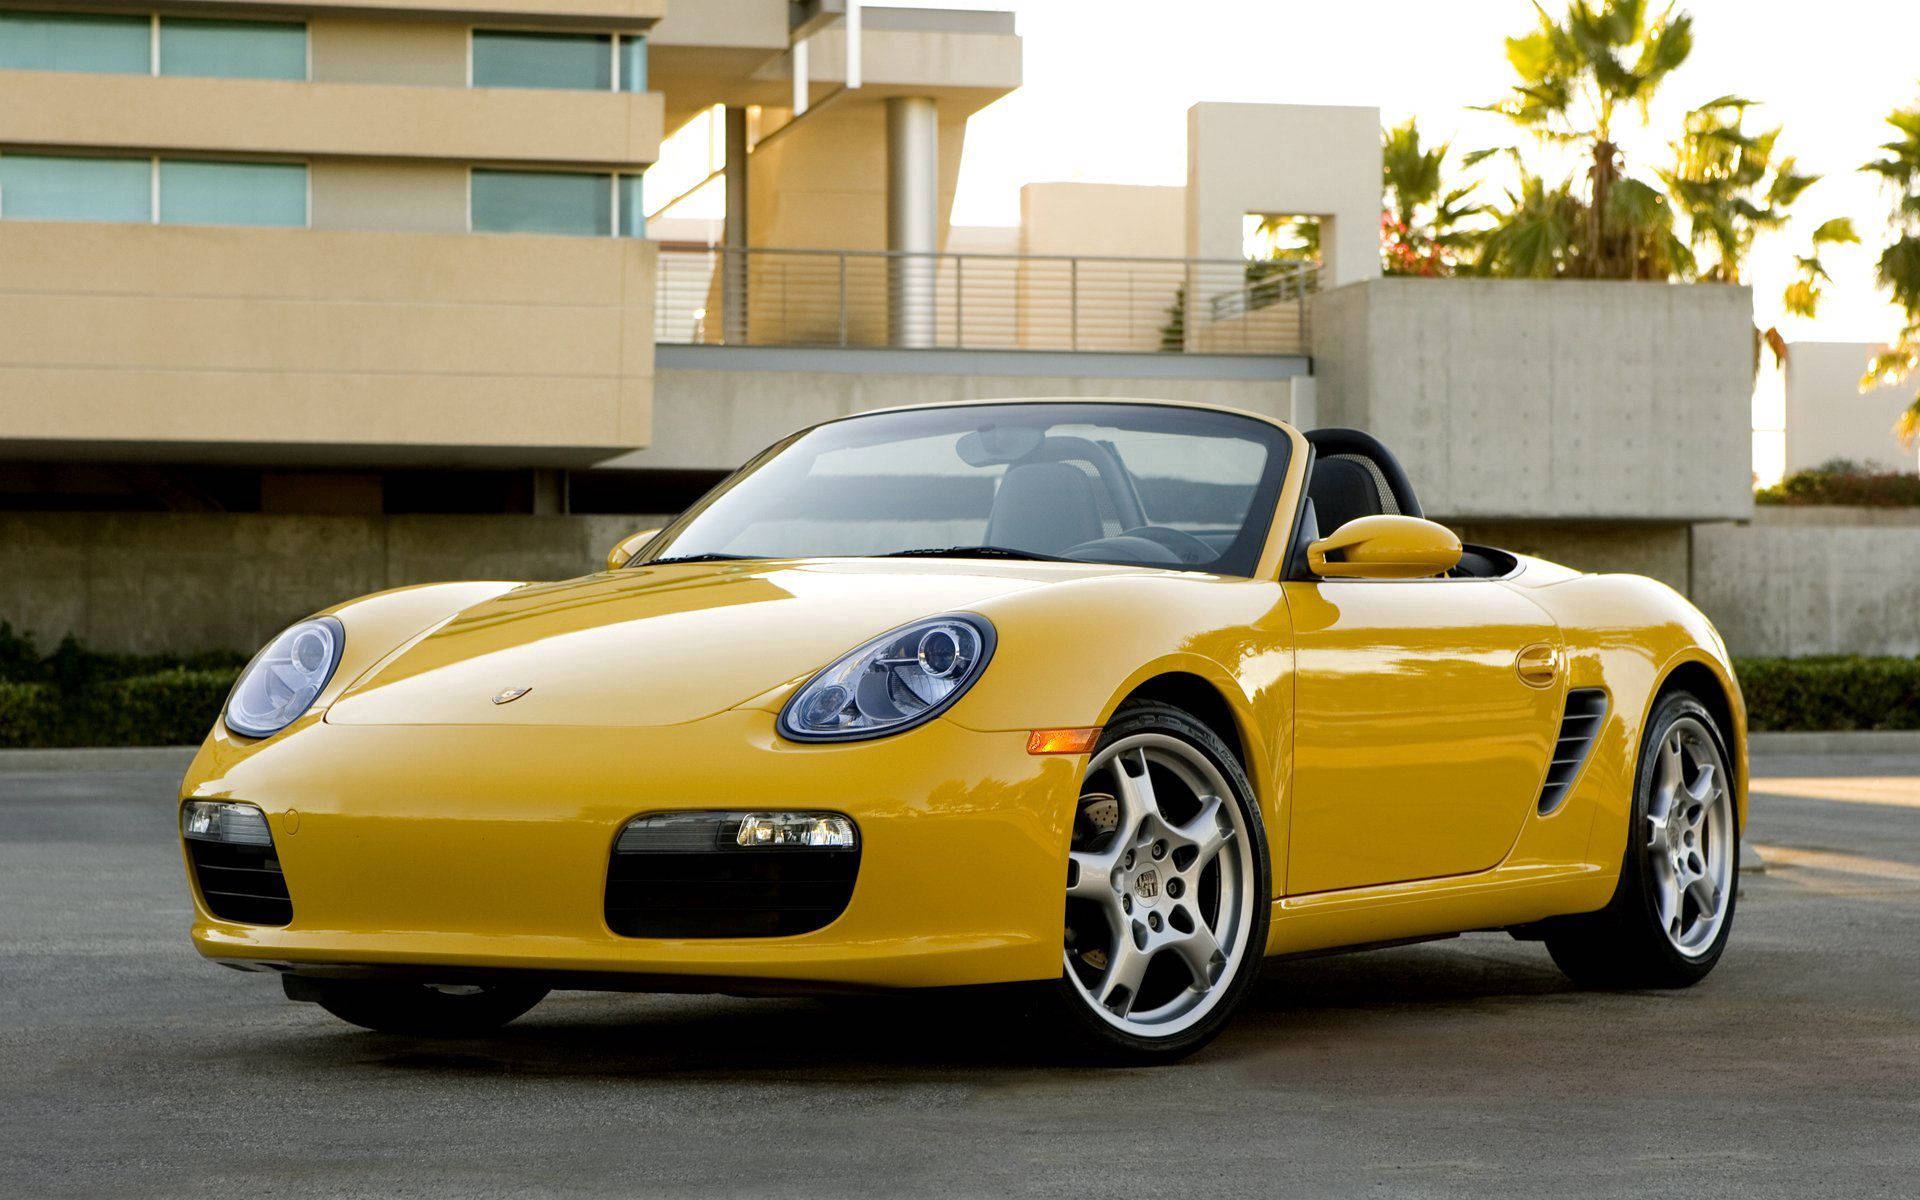 2008 Porsche Boxster Yellow Convertible Wallpaper